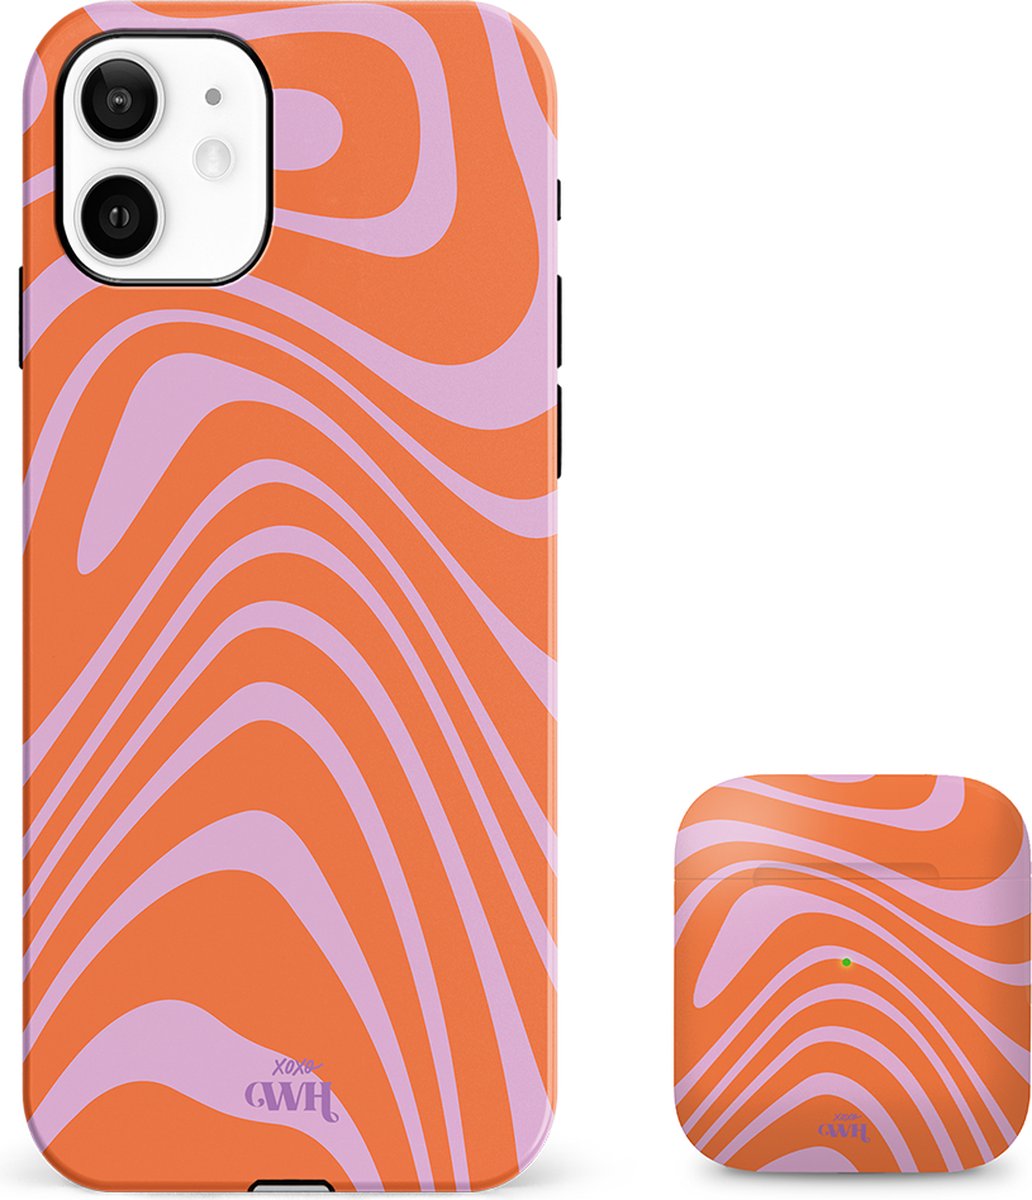 xoxo Wildhearts siliconen hoesje + AirPods 1/2 hoesje - Geschikt voor iPhone 12 en AirPods 1 en 2 - Boogie Wonderland Orange - Double Layer telefoonhoesje - Oranje - Roze - Hoesje met print